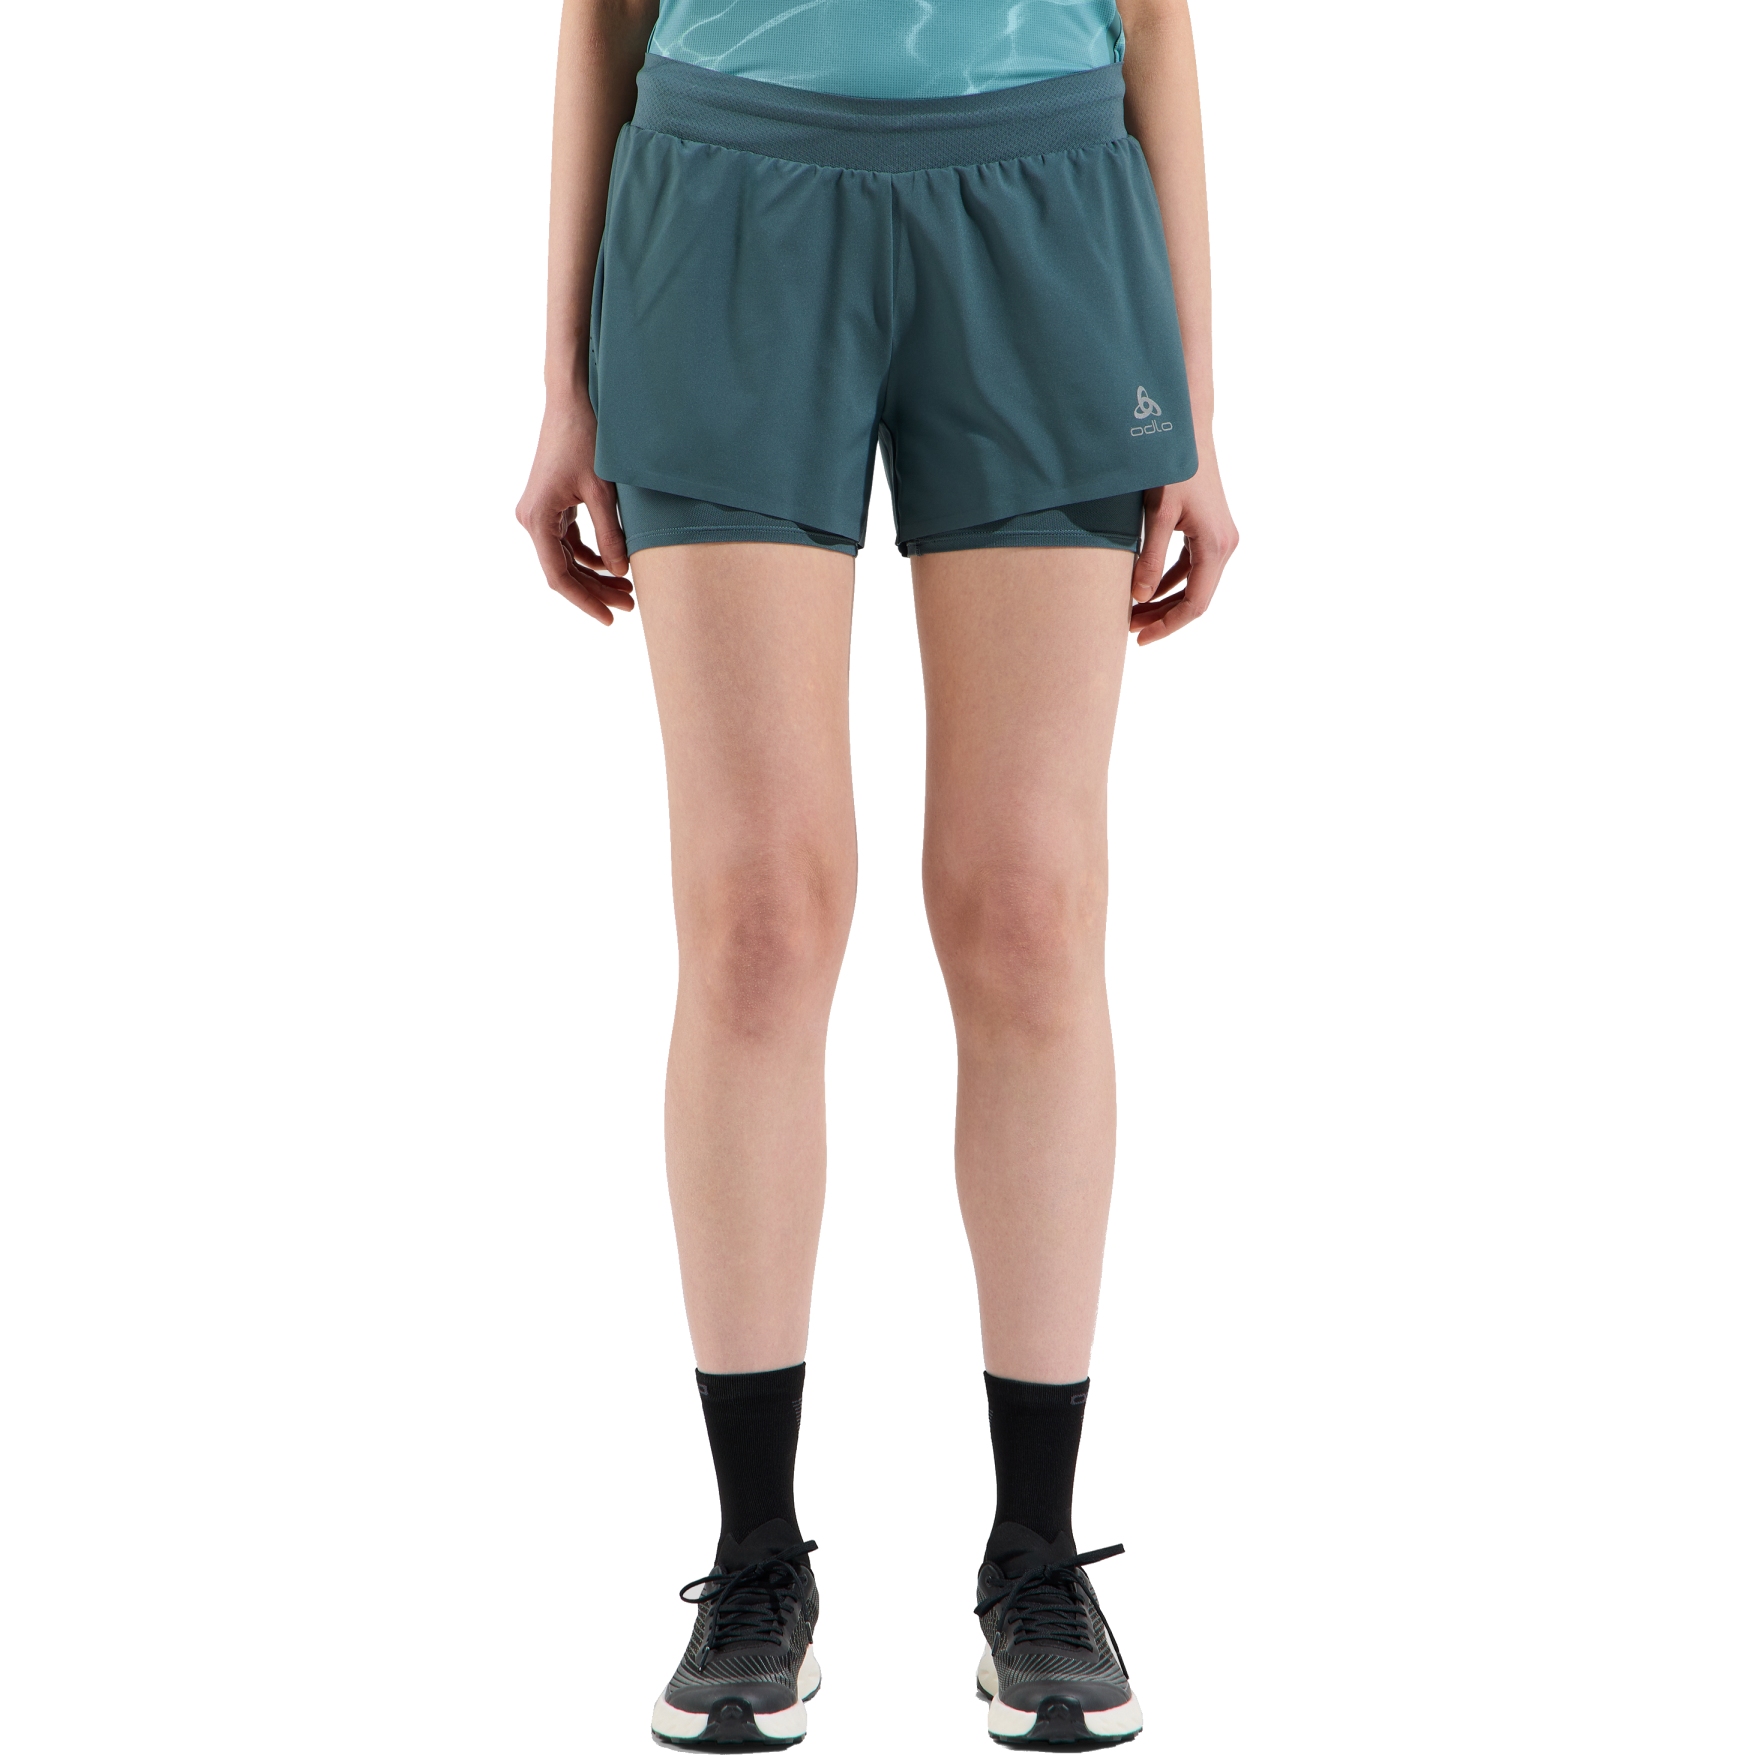 Produktbild von Odlo Zeroweight 3 Inch 2-in-1 Shorts Damen - dark slate